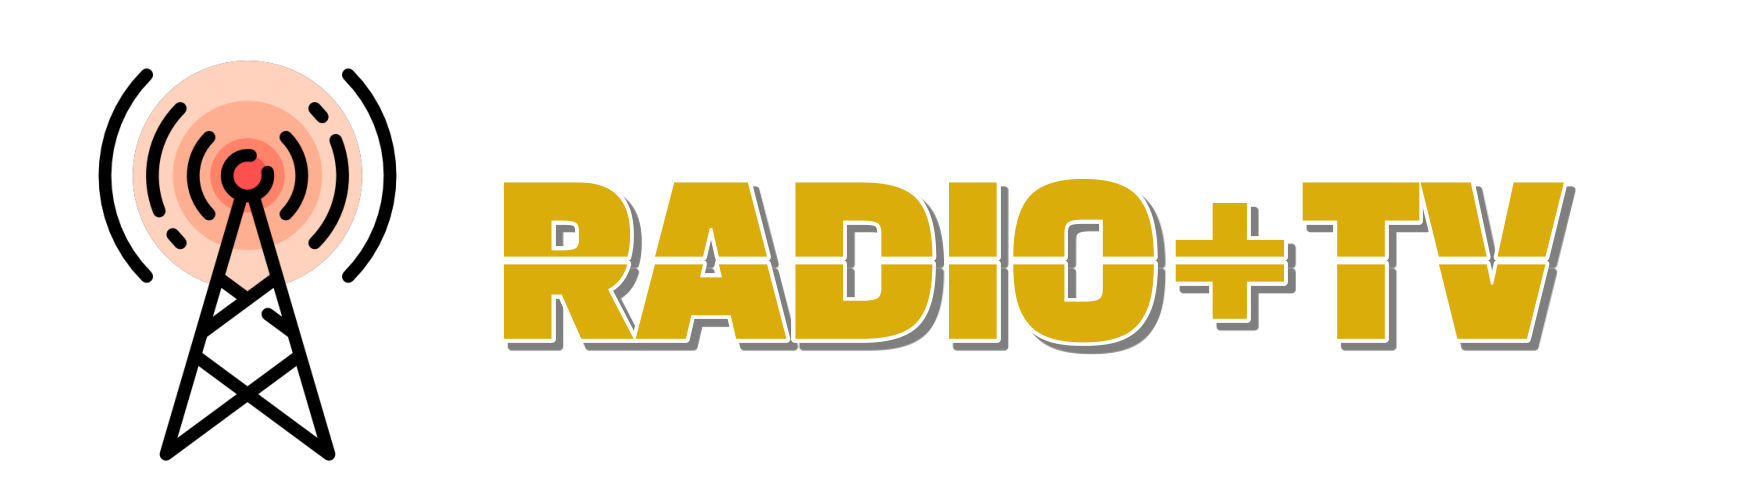 Anbieter von Radio- und TV-Sendern